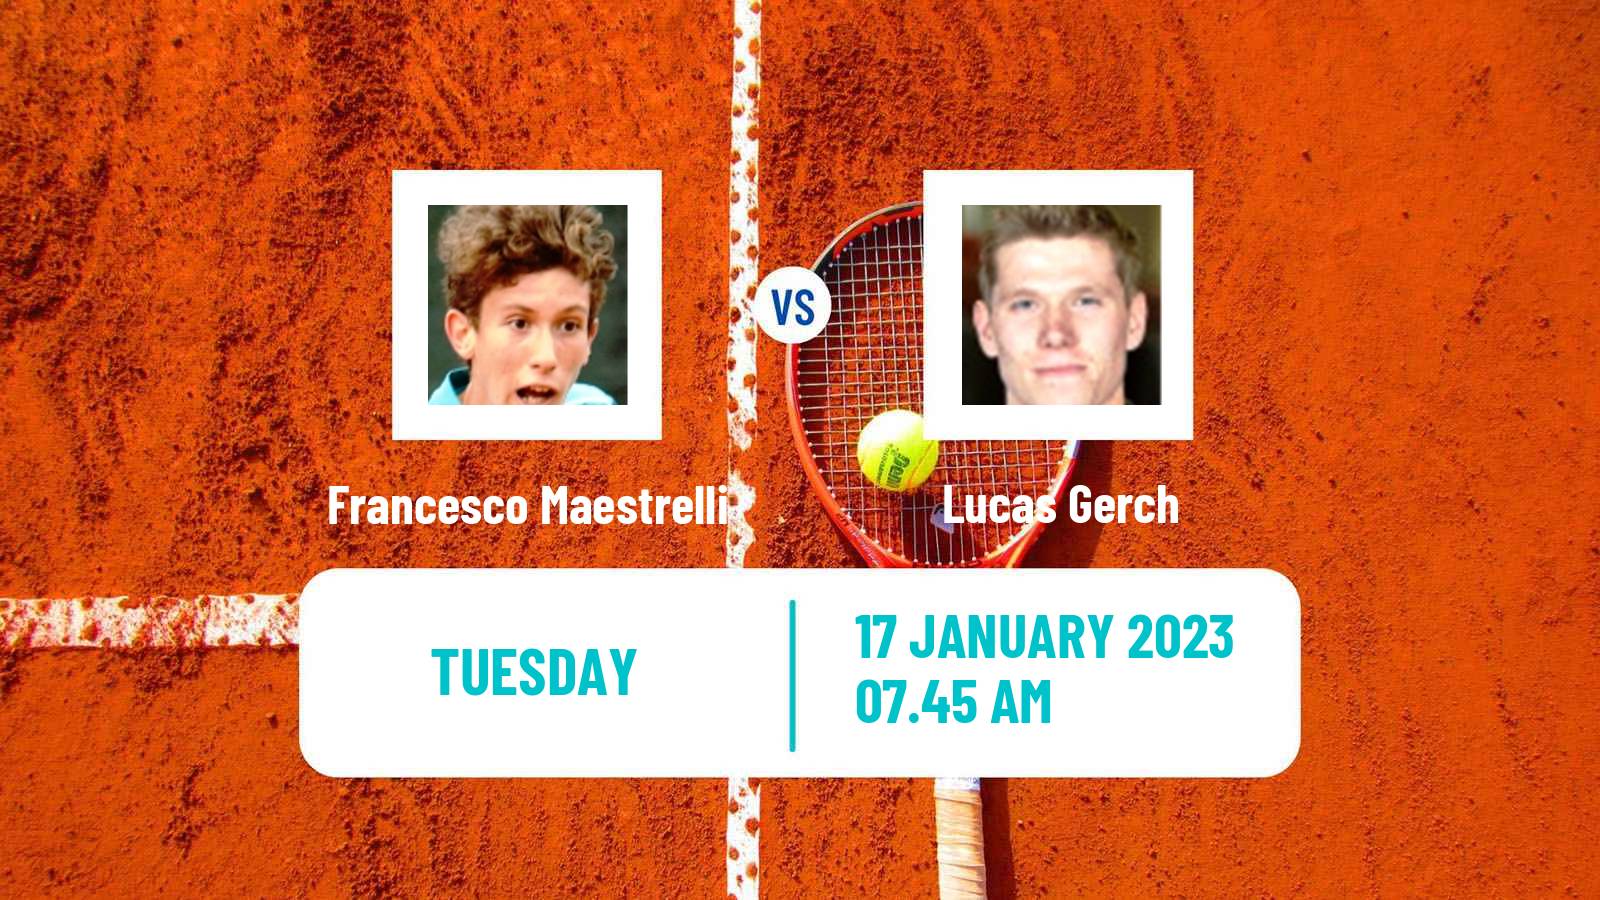 Tennis ATP Challenger Francesco Maestrelli - Lucas Gerch